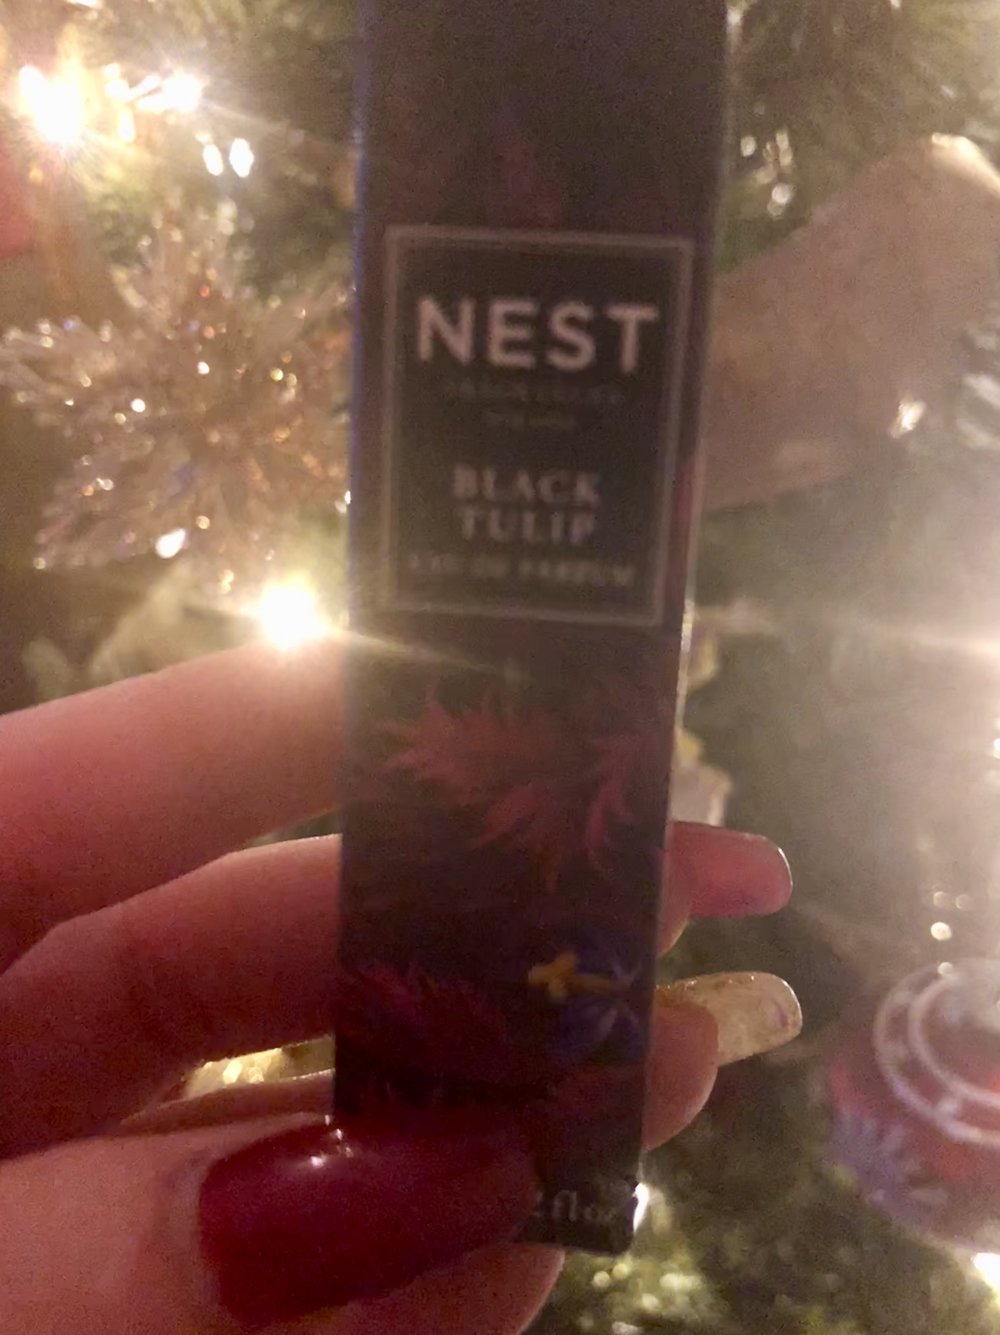 Copy of December 3:  NEST Black Tulip Rollerball Eau de Parfum